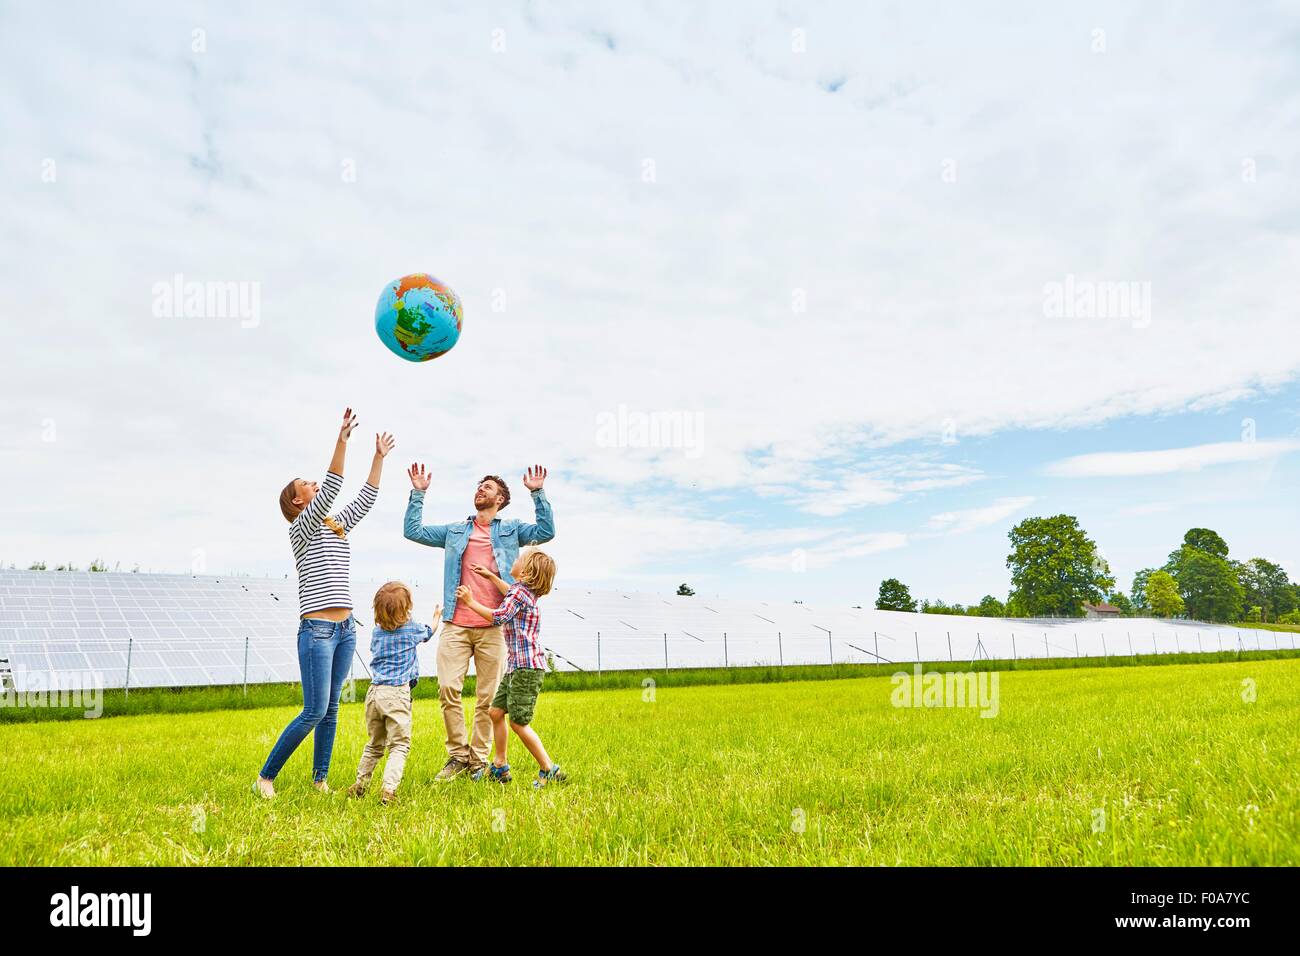 Famiglia giovane giocando con il pallone gonfiabile, sul campo, accanto alla fattoria solare Foto Stock